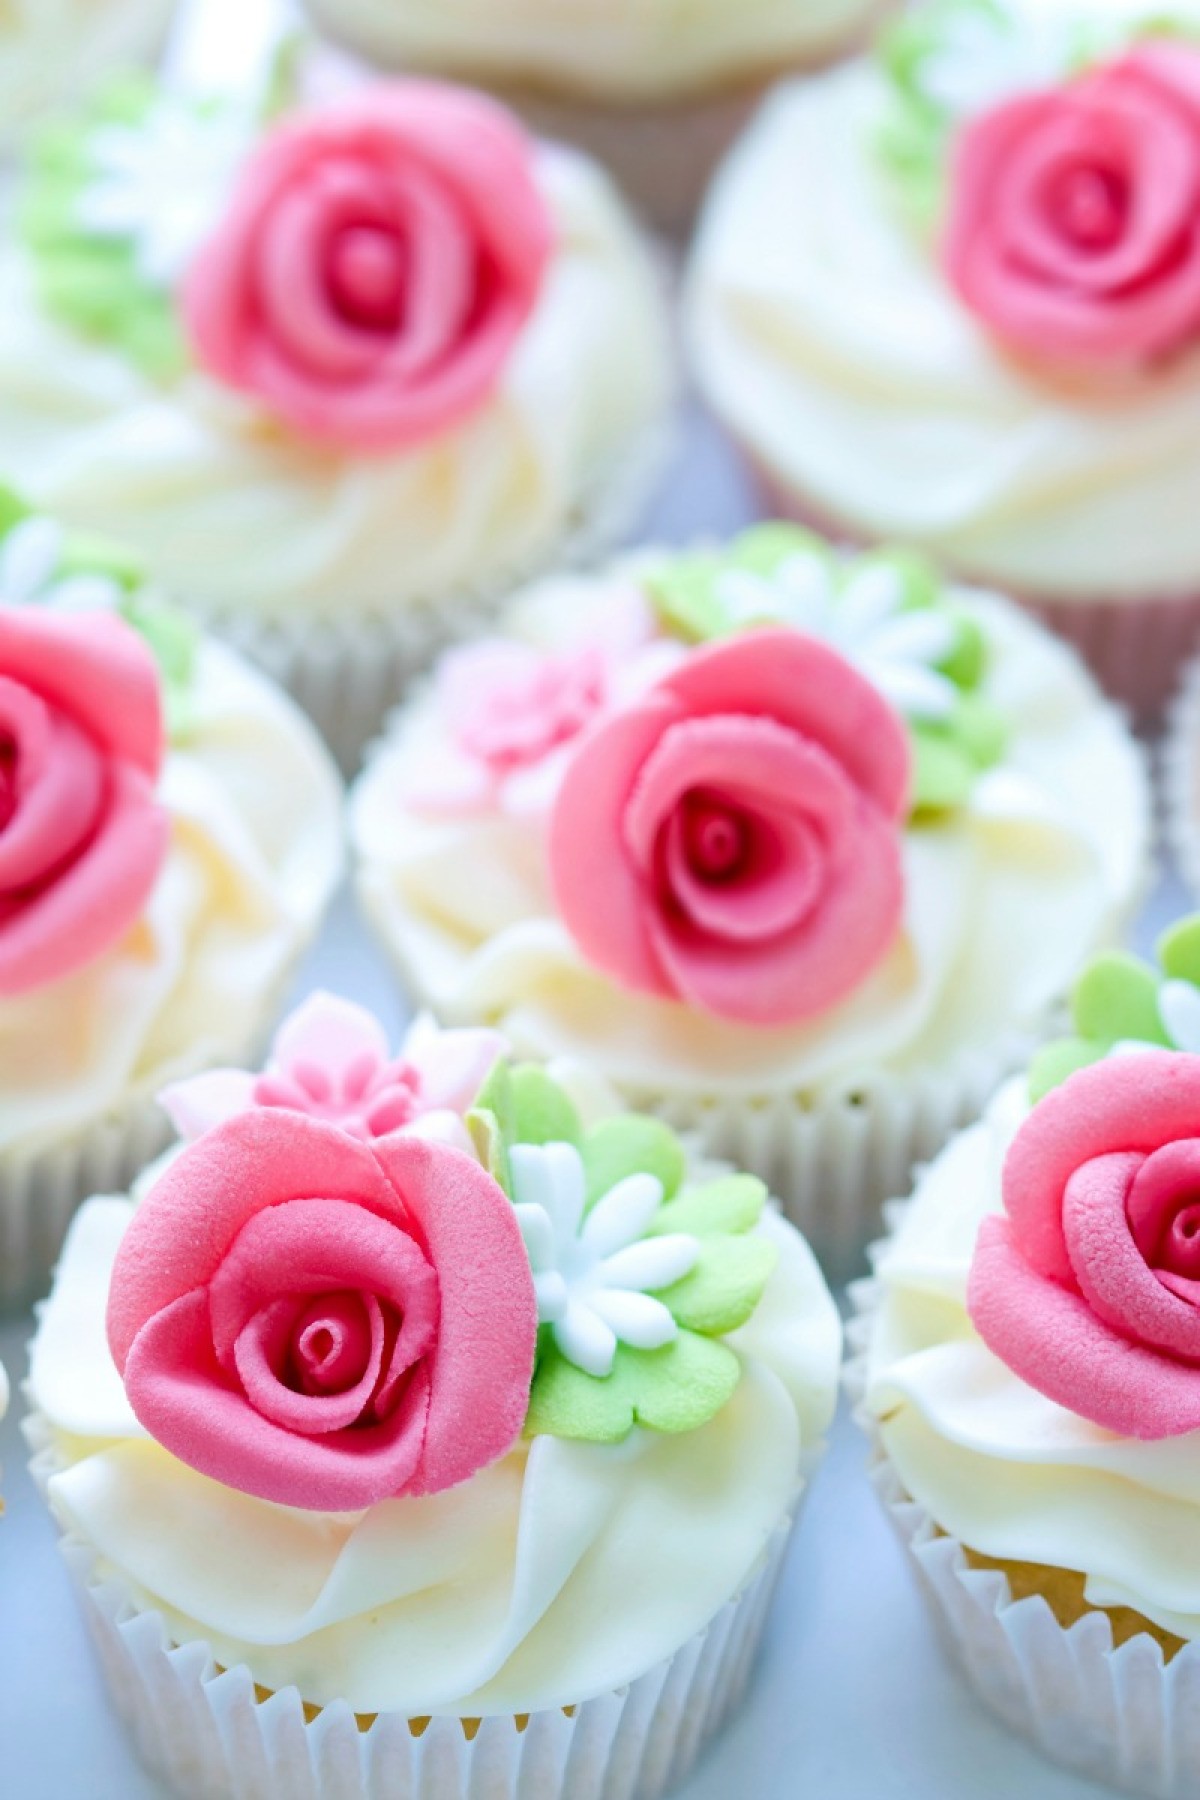 Displaying Wedding Cupcakes | ThriftyFun